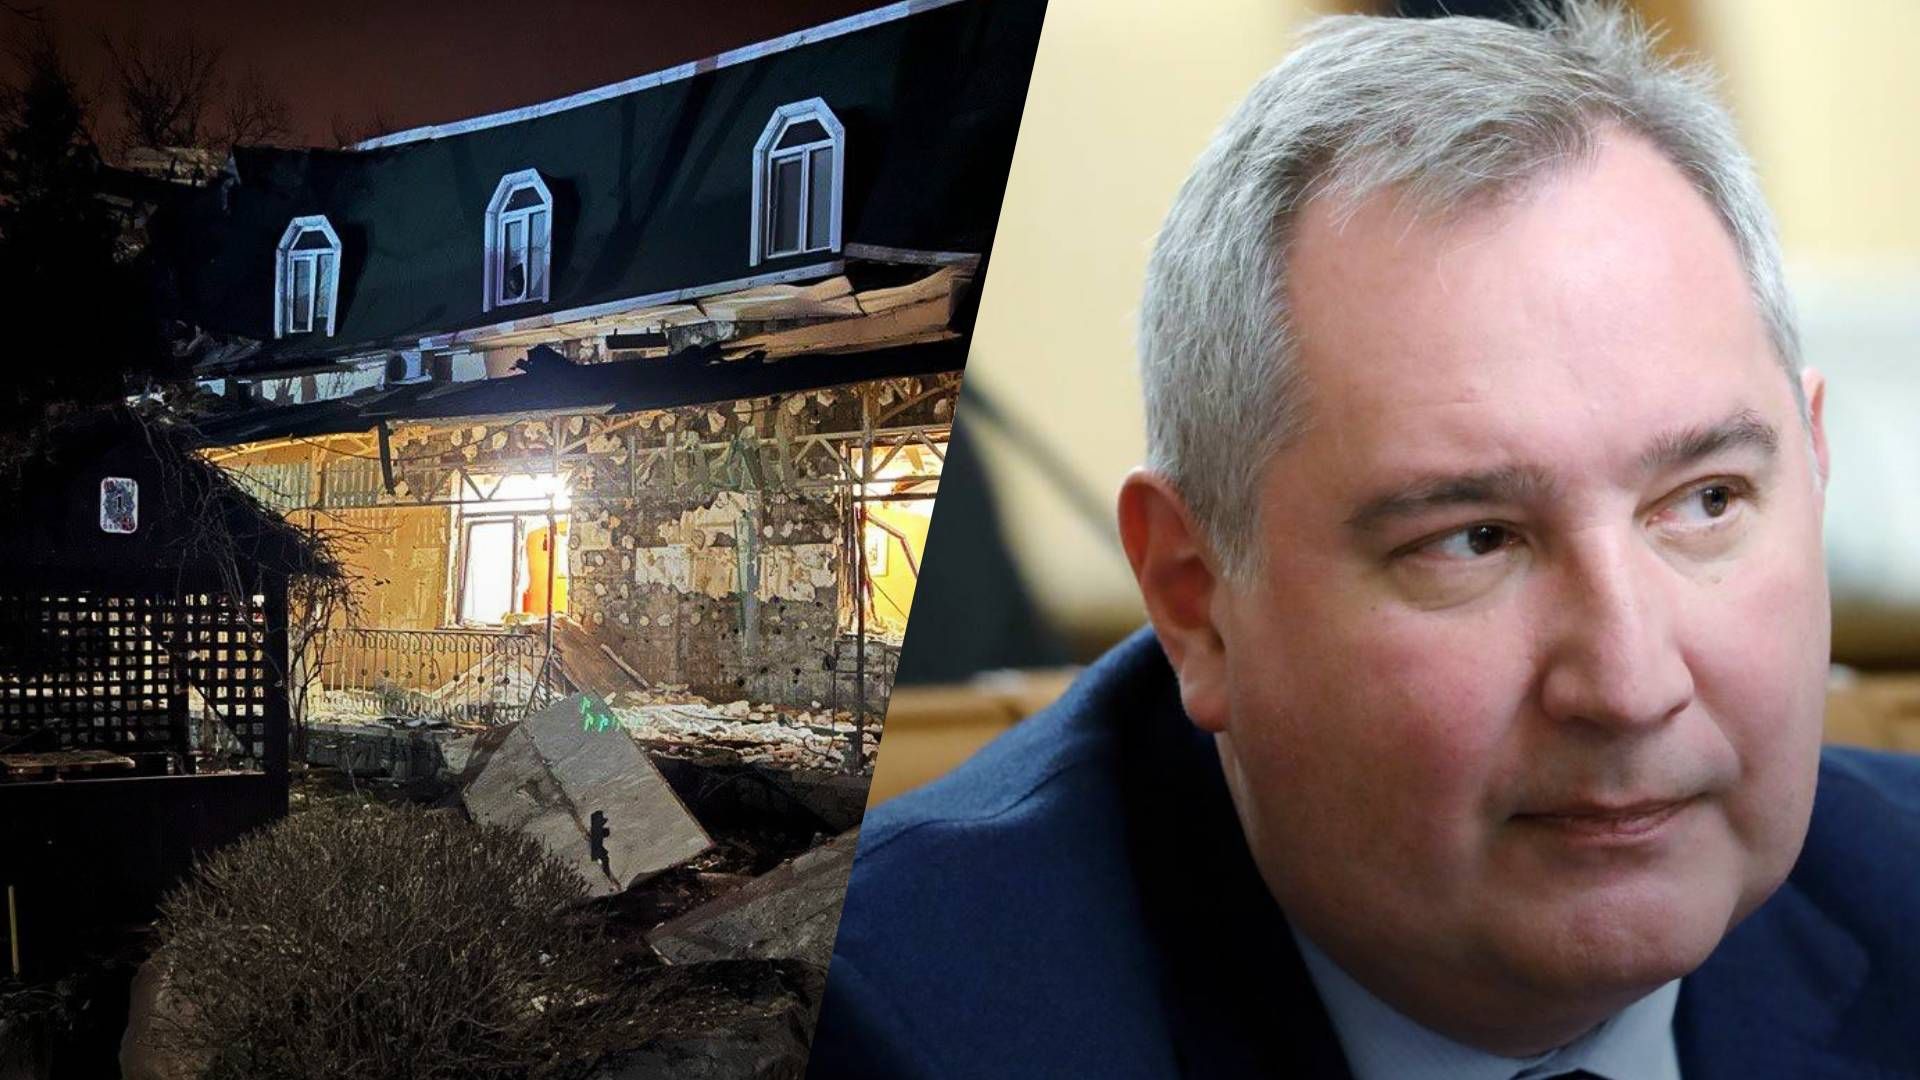 Рогозин ранен – в Донецке обстреляли ресторан Шеш-Беш